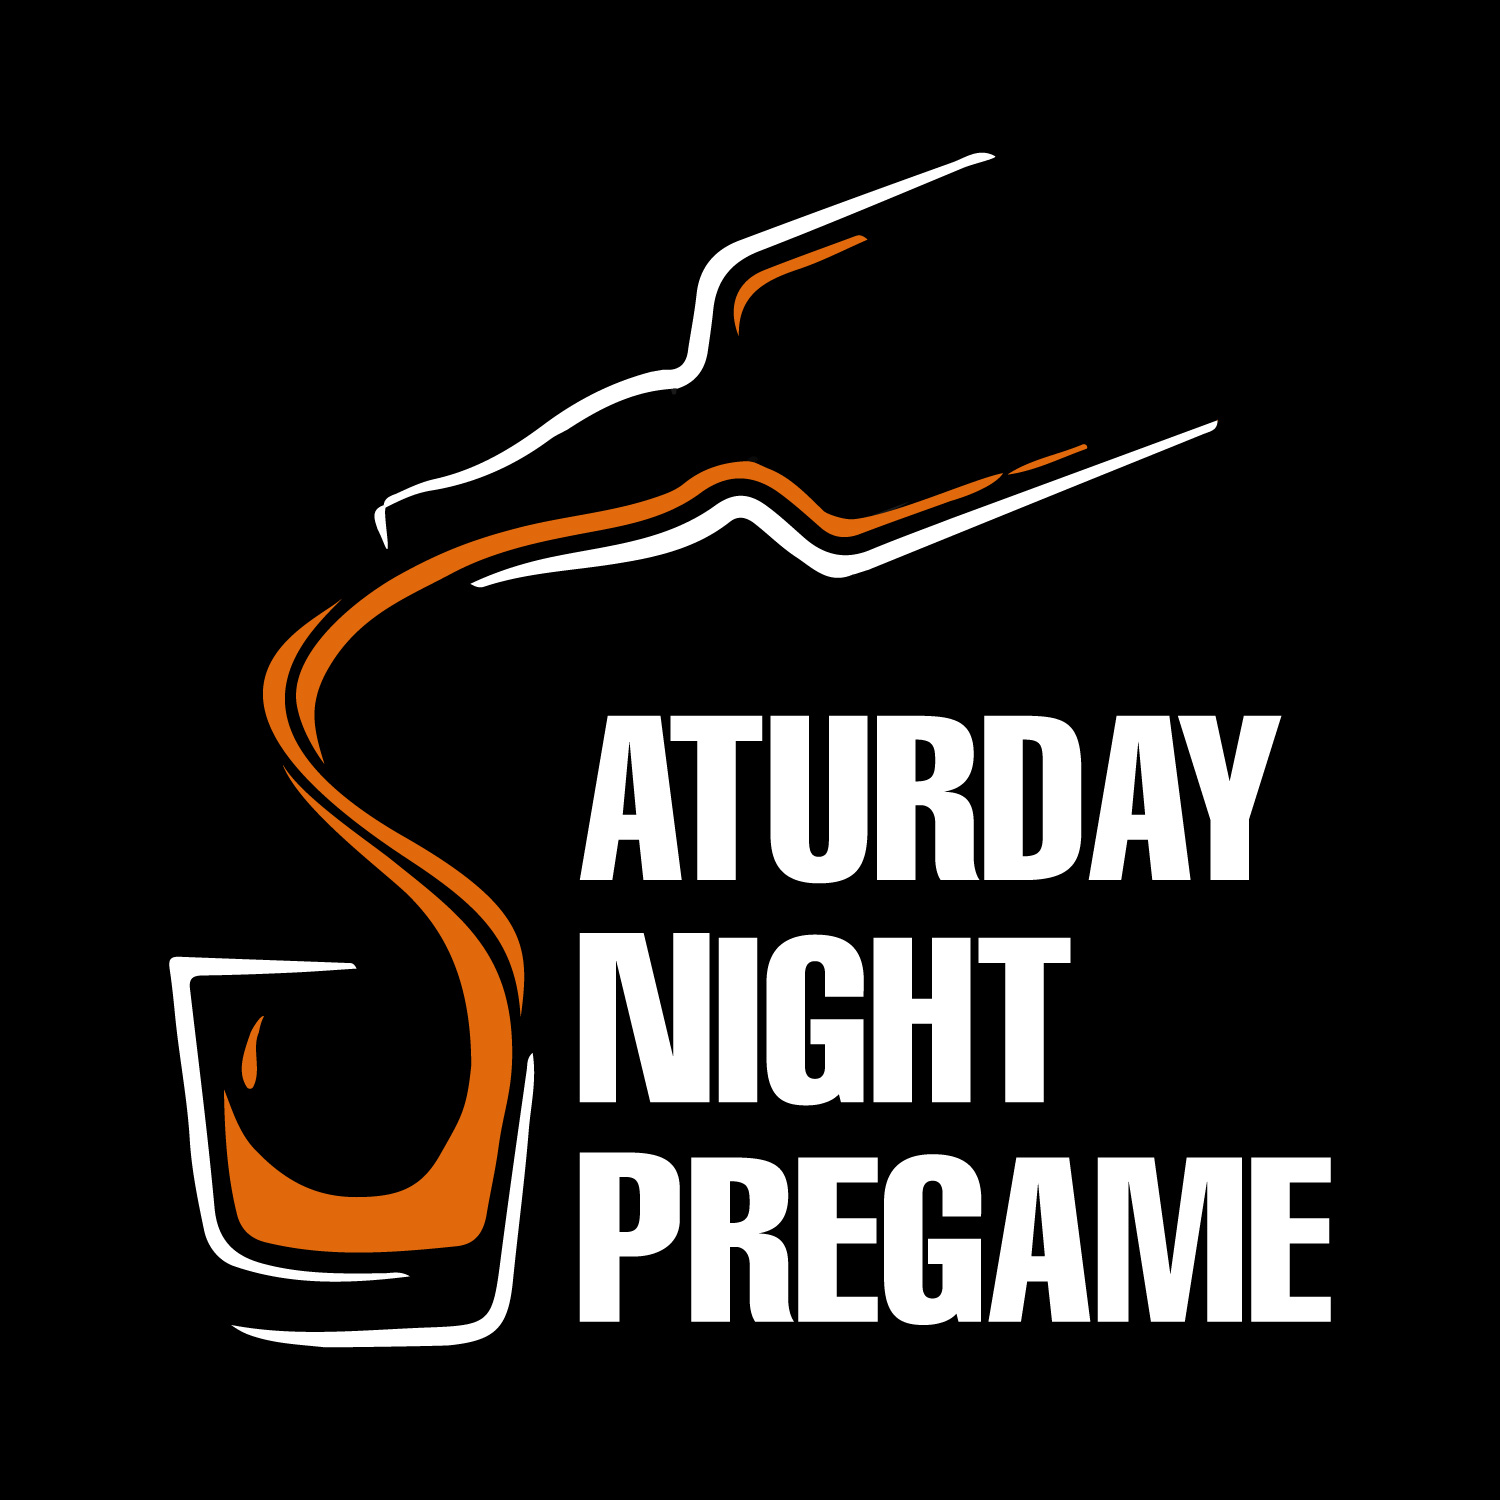 Saturday Night Pregame Podcast